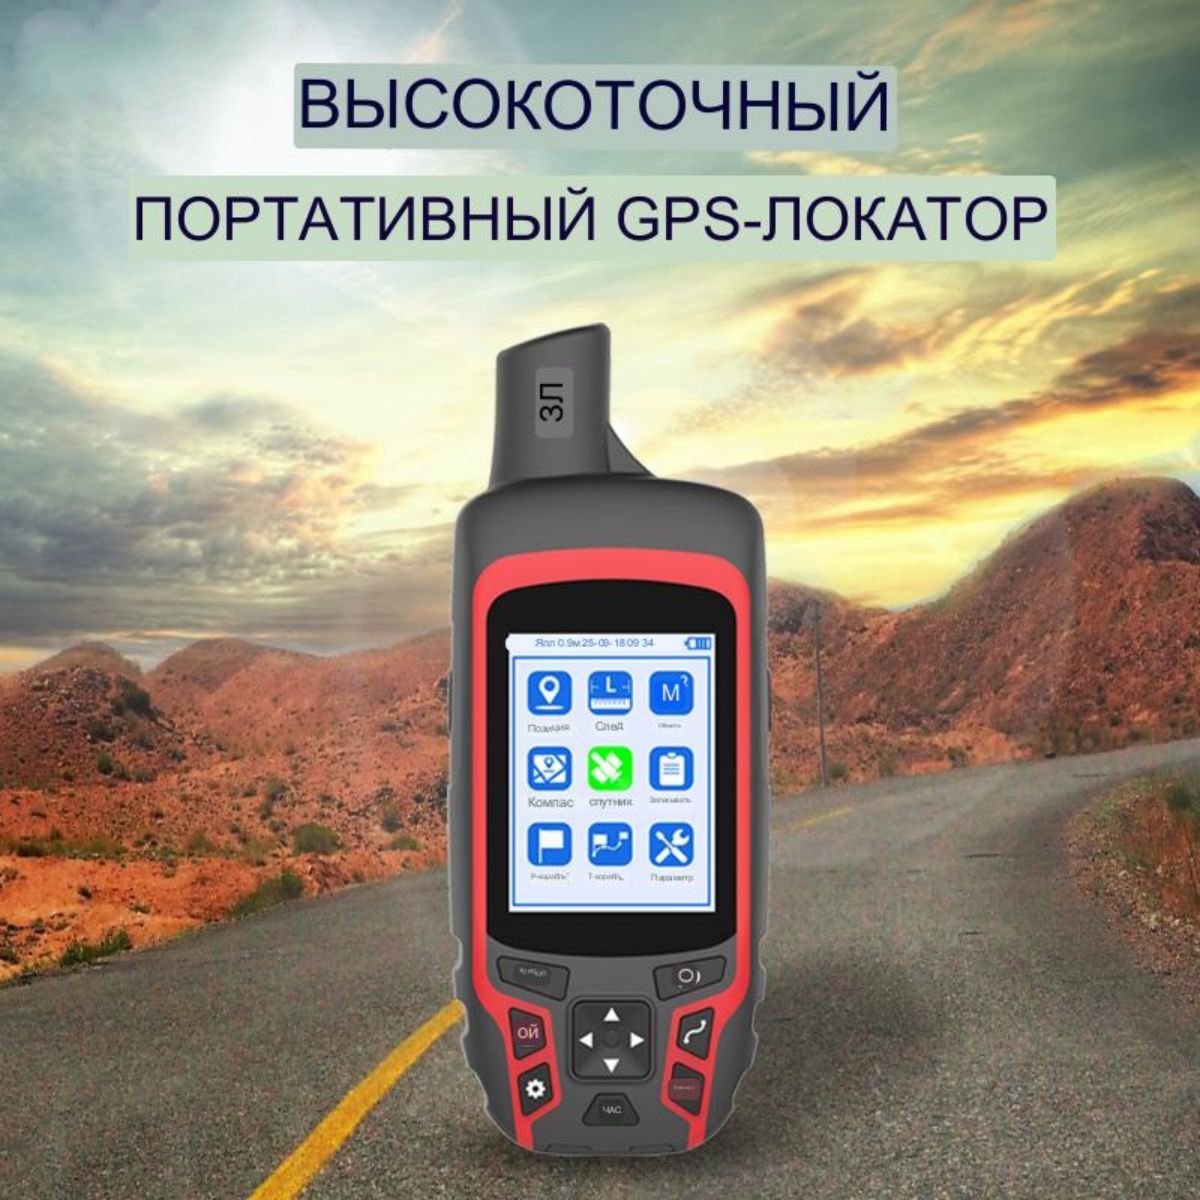 Купить GPS навигаторы в Беларуси с доставкой